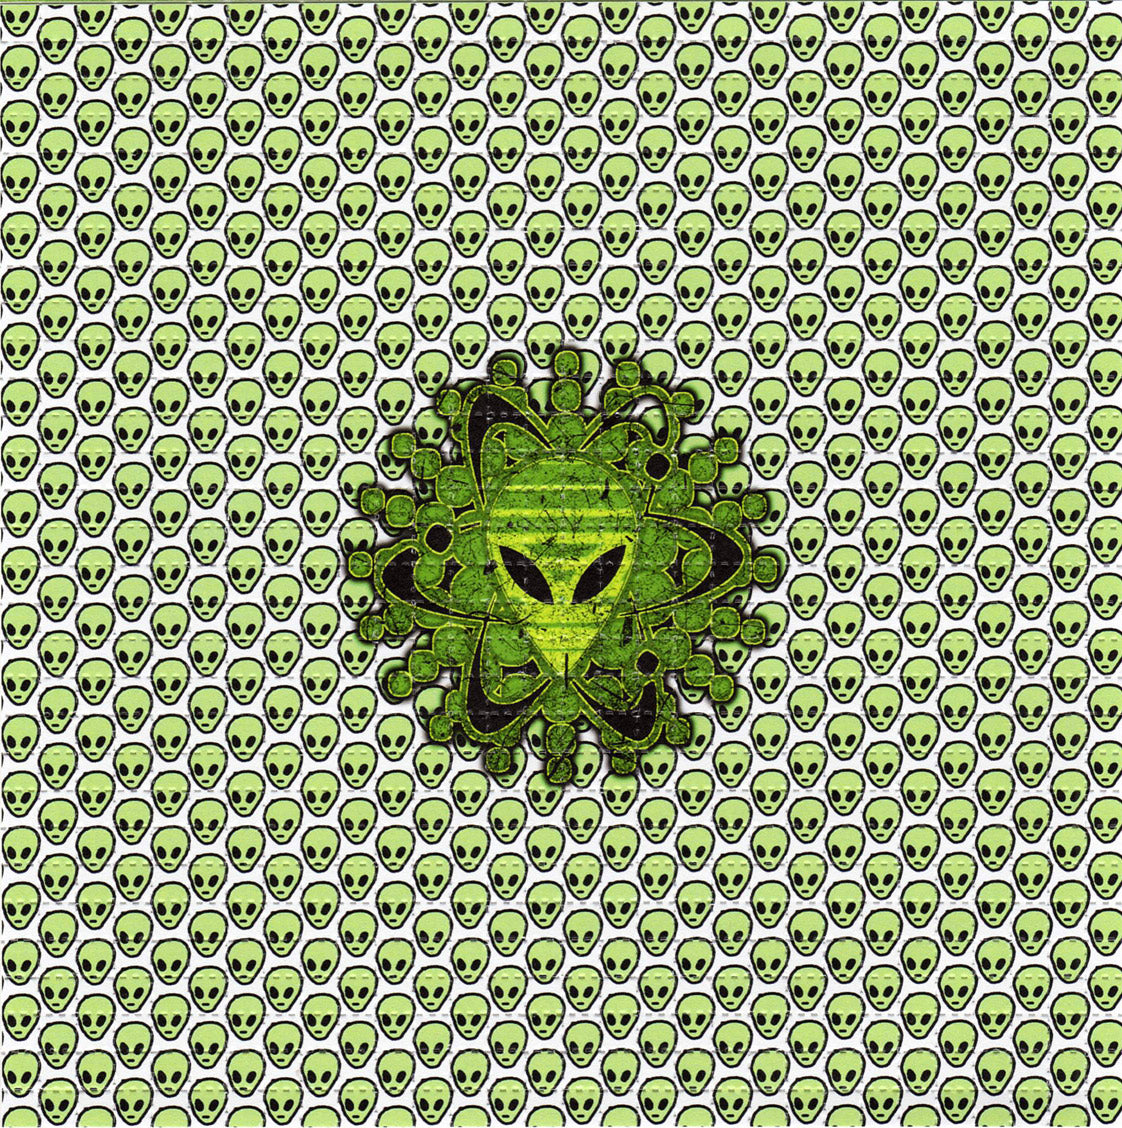 Little Green Aliens LSD blotter art print